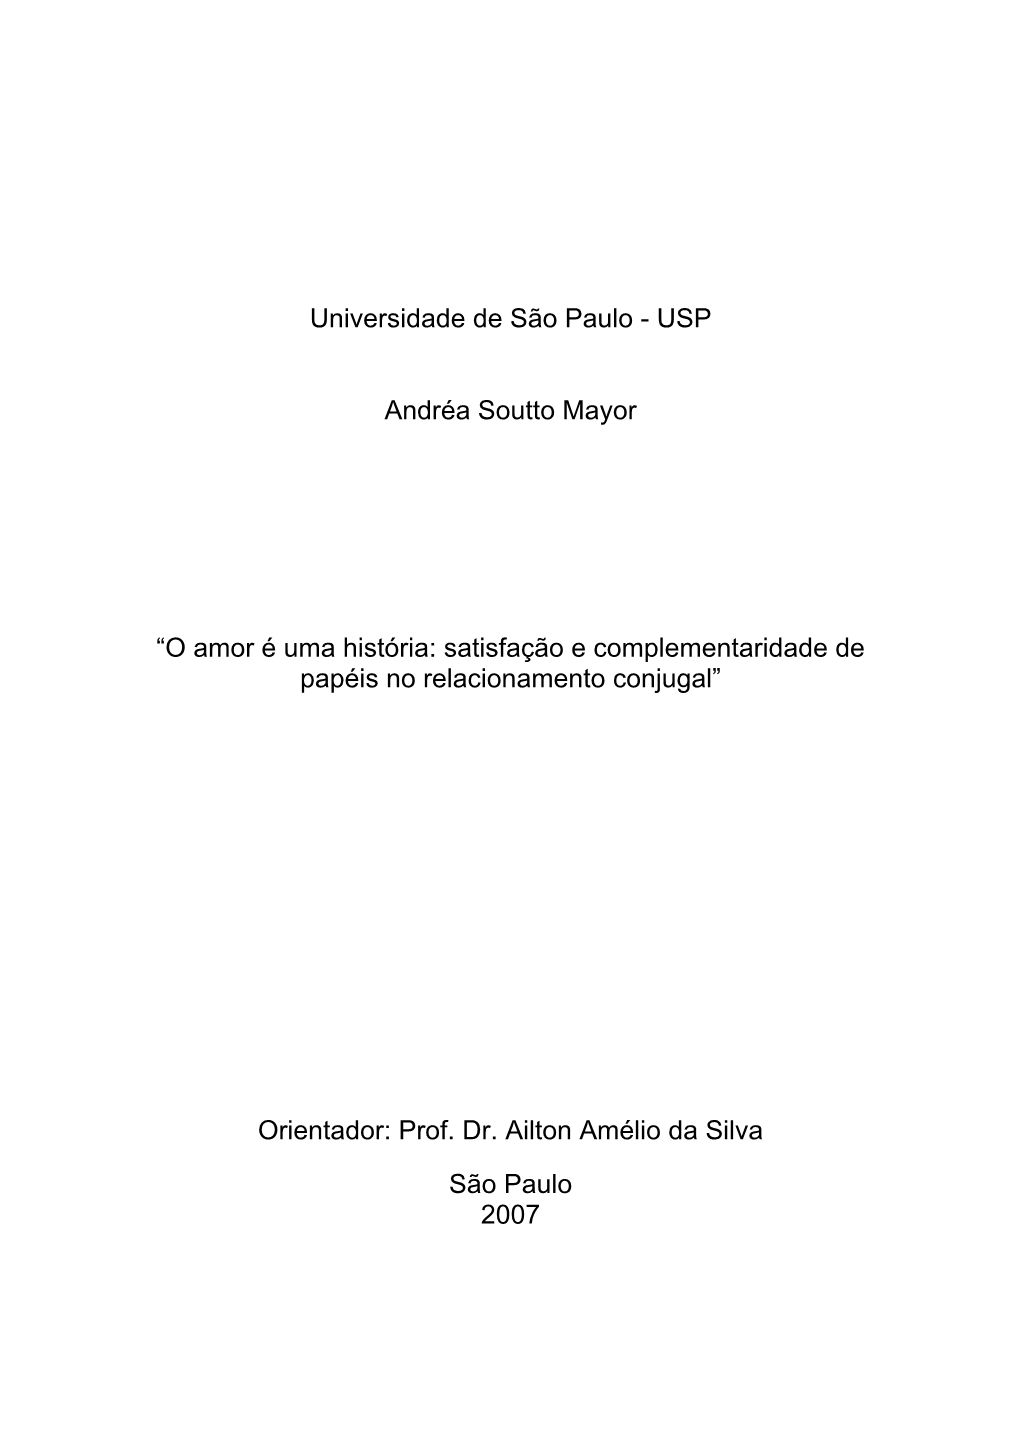 USP Andréa Soutto Mayor “O Amor É Uma História: Satisfação E